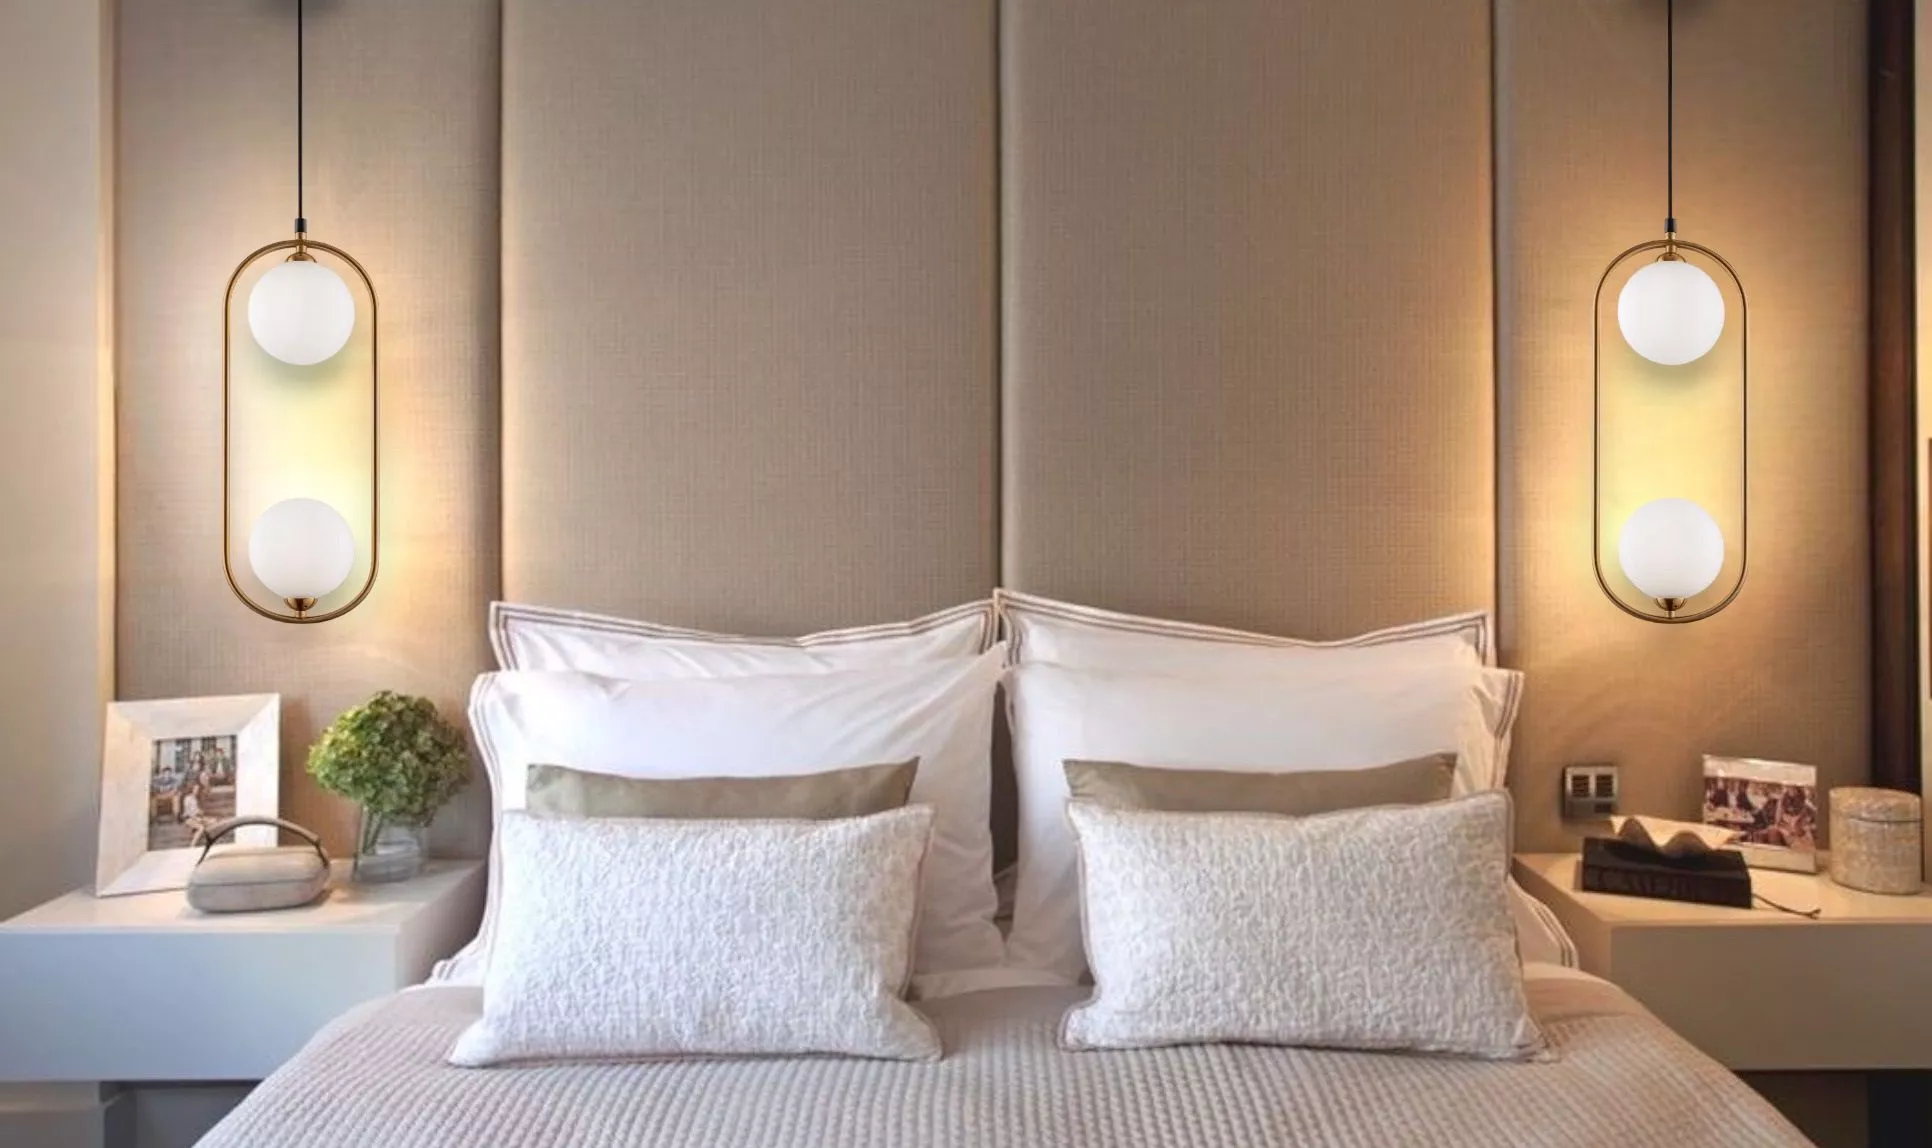 Lampada comodino Sfera bianca moderna di design camera da letto